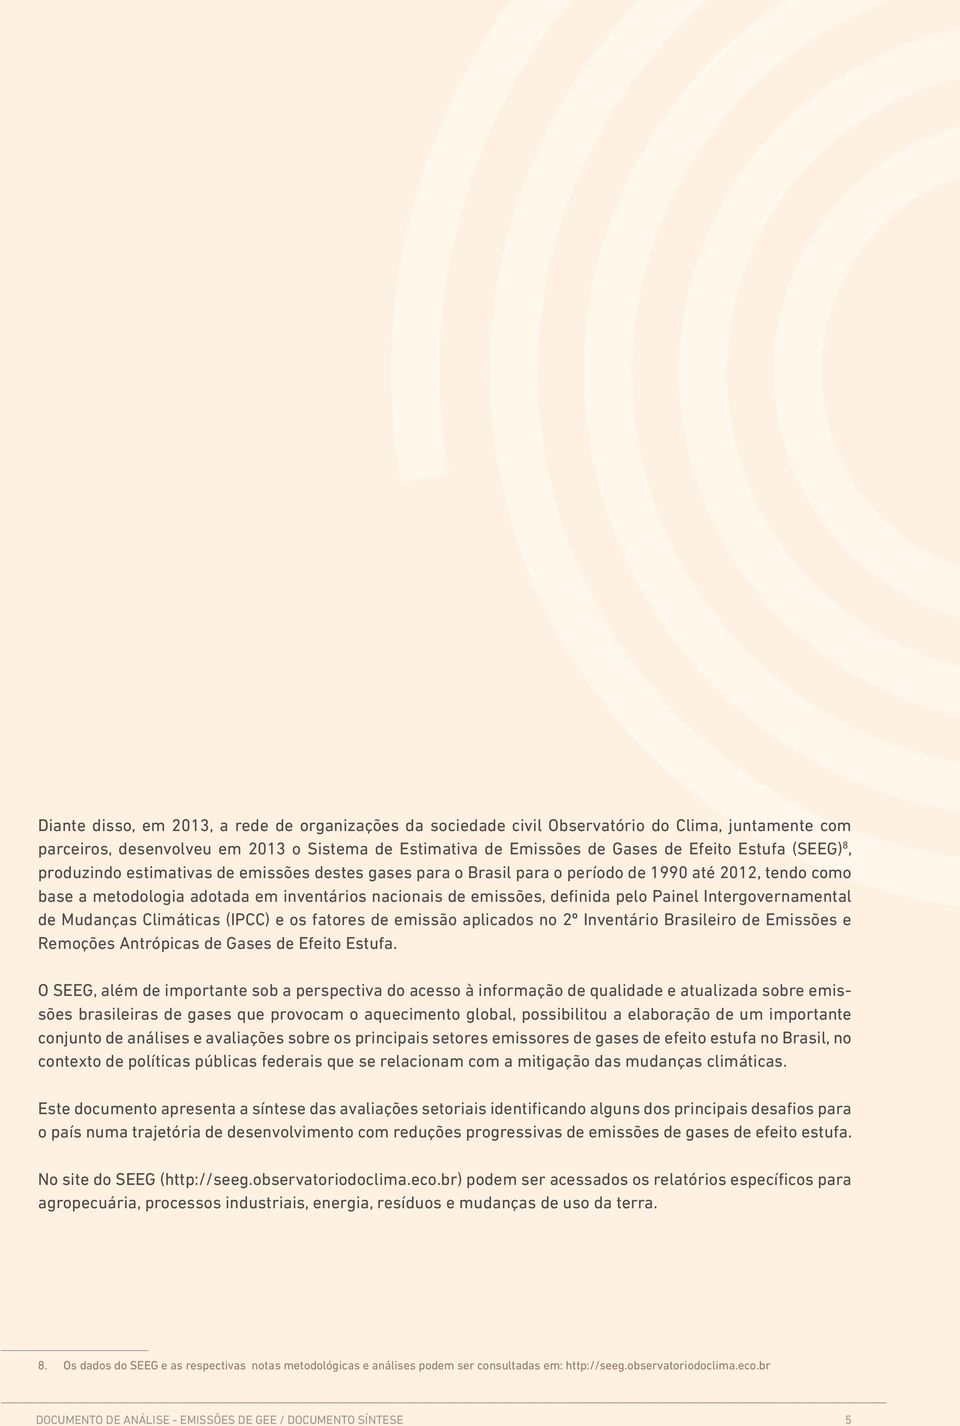 Painel Intergovernamental de Mudanças Climáticas (IPCC) e os fatores de emissão aplicados no 2º Inventário Brasileiro de Emissões e Remoções Antrópicas de Gases de Efeito Estufa.